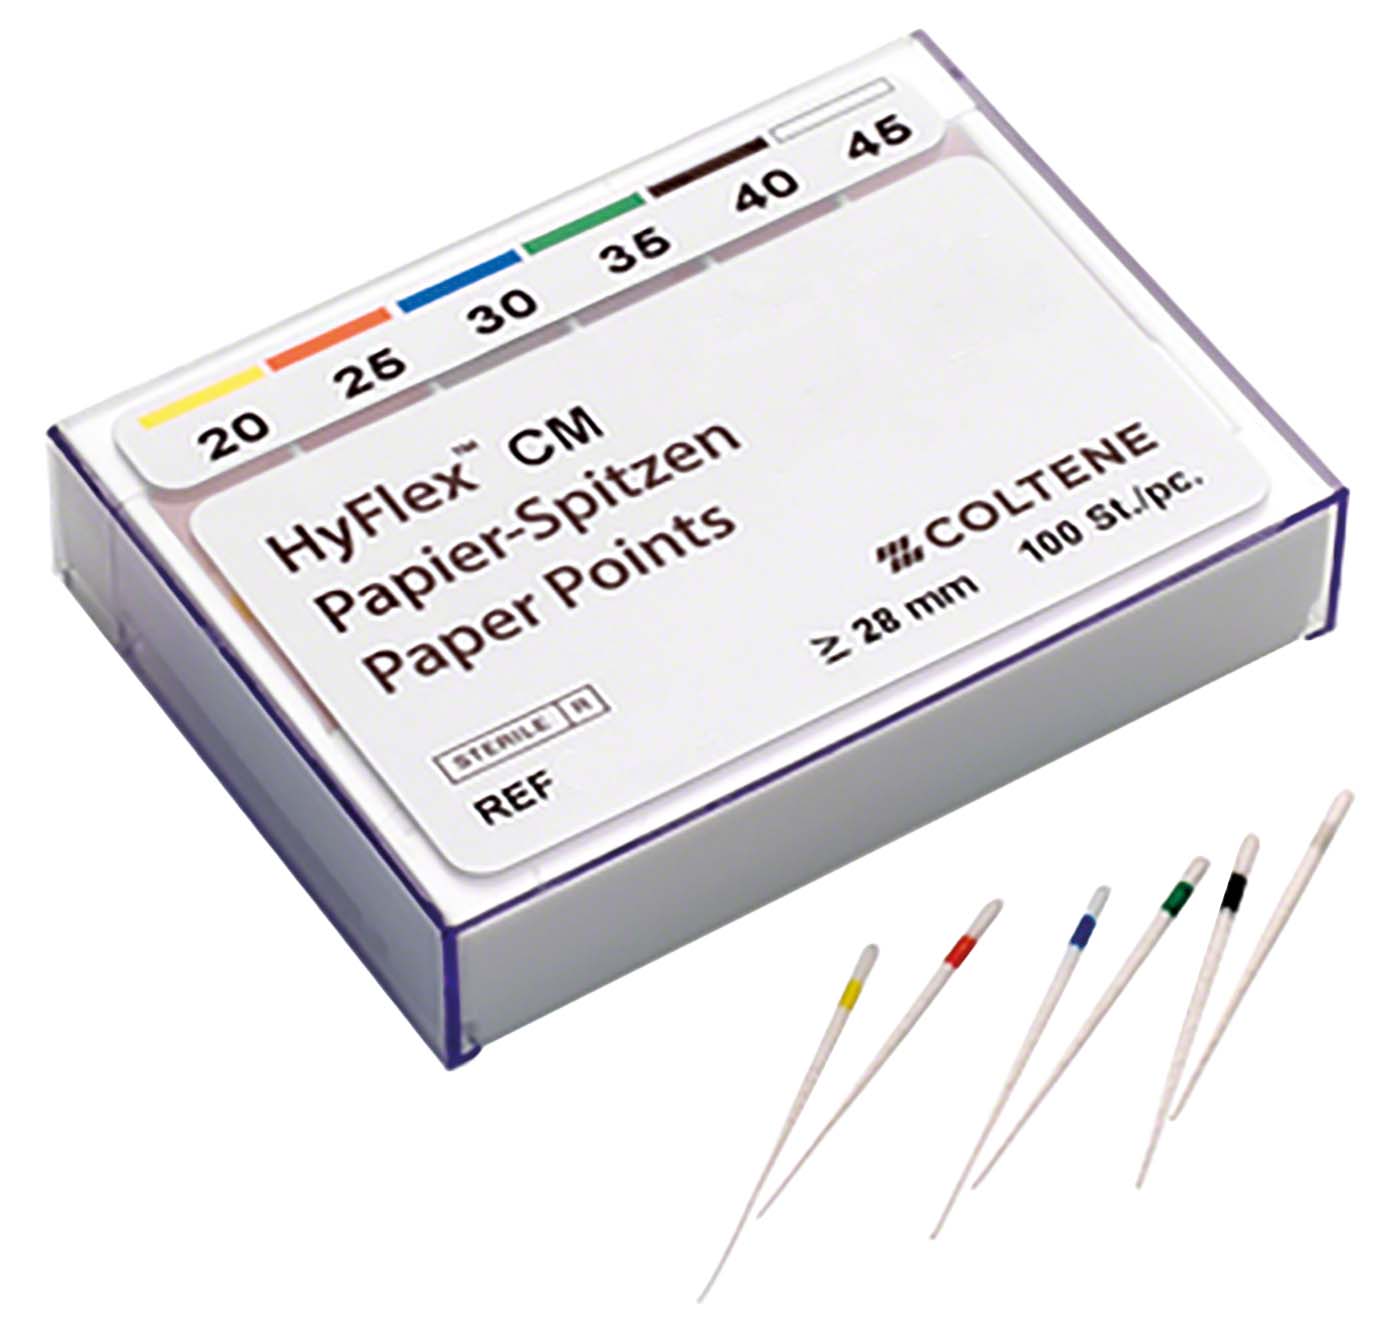 HyFlex™ CM Papierspitzen COLTENE